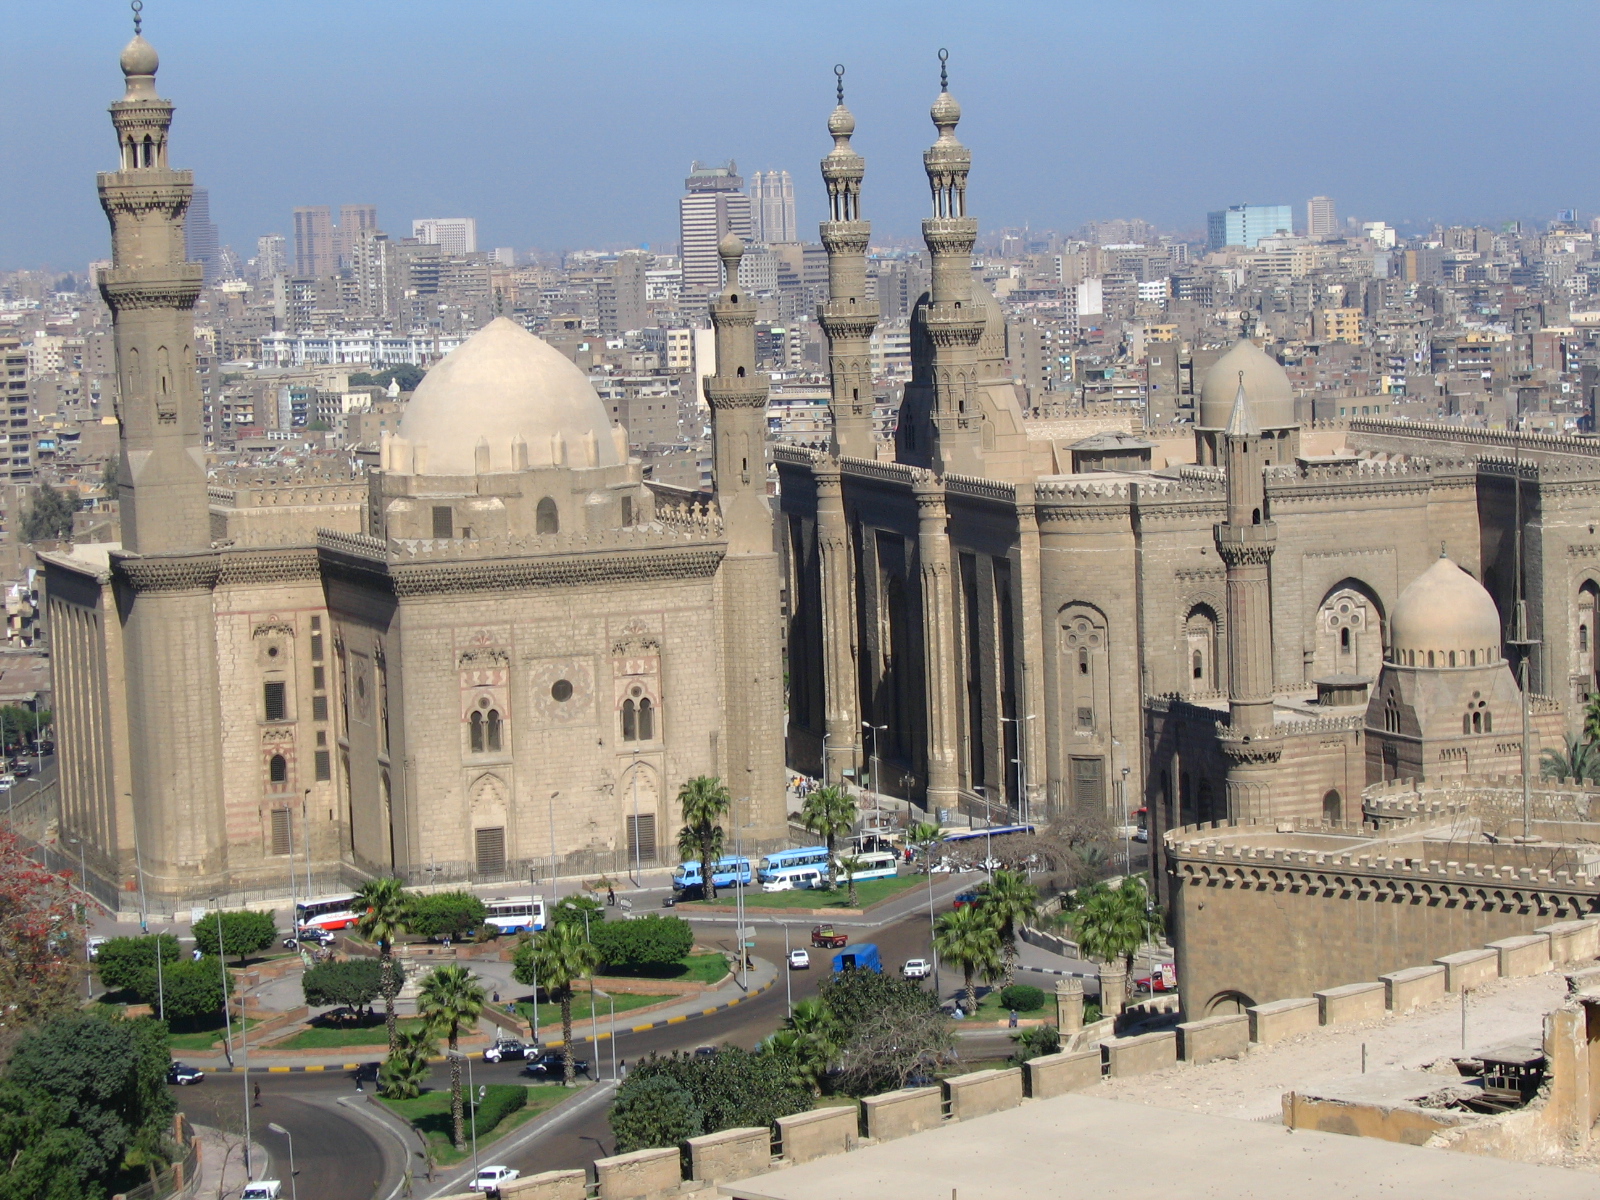 Kairó két évre felfüggesztette az árfolyamnyereségre kivetett adót, a tőzsde 5 százalékot ugrott